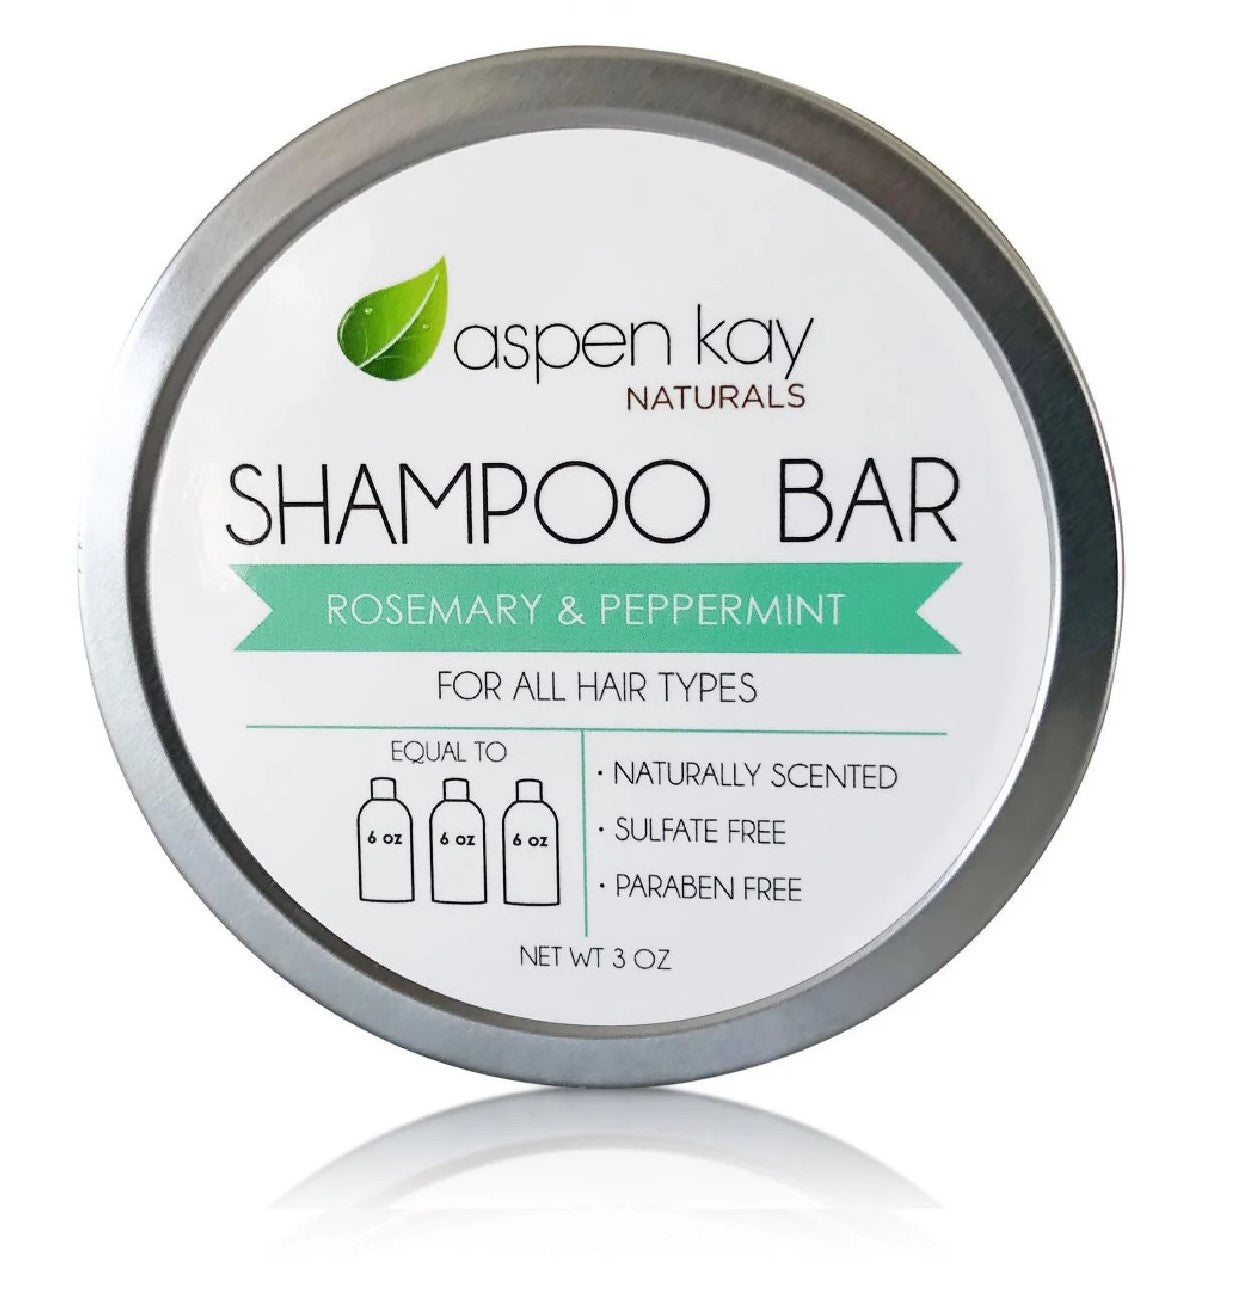 Shampoo Bar - Rosemary Mint